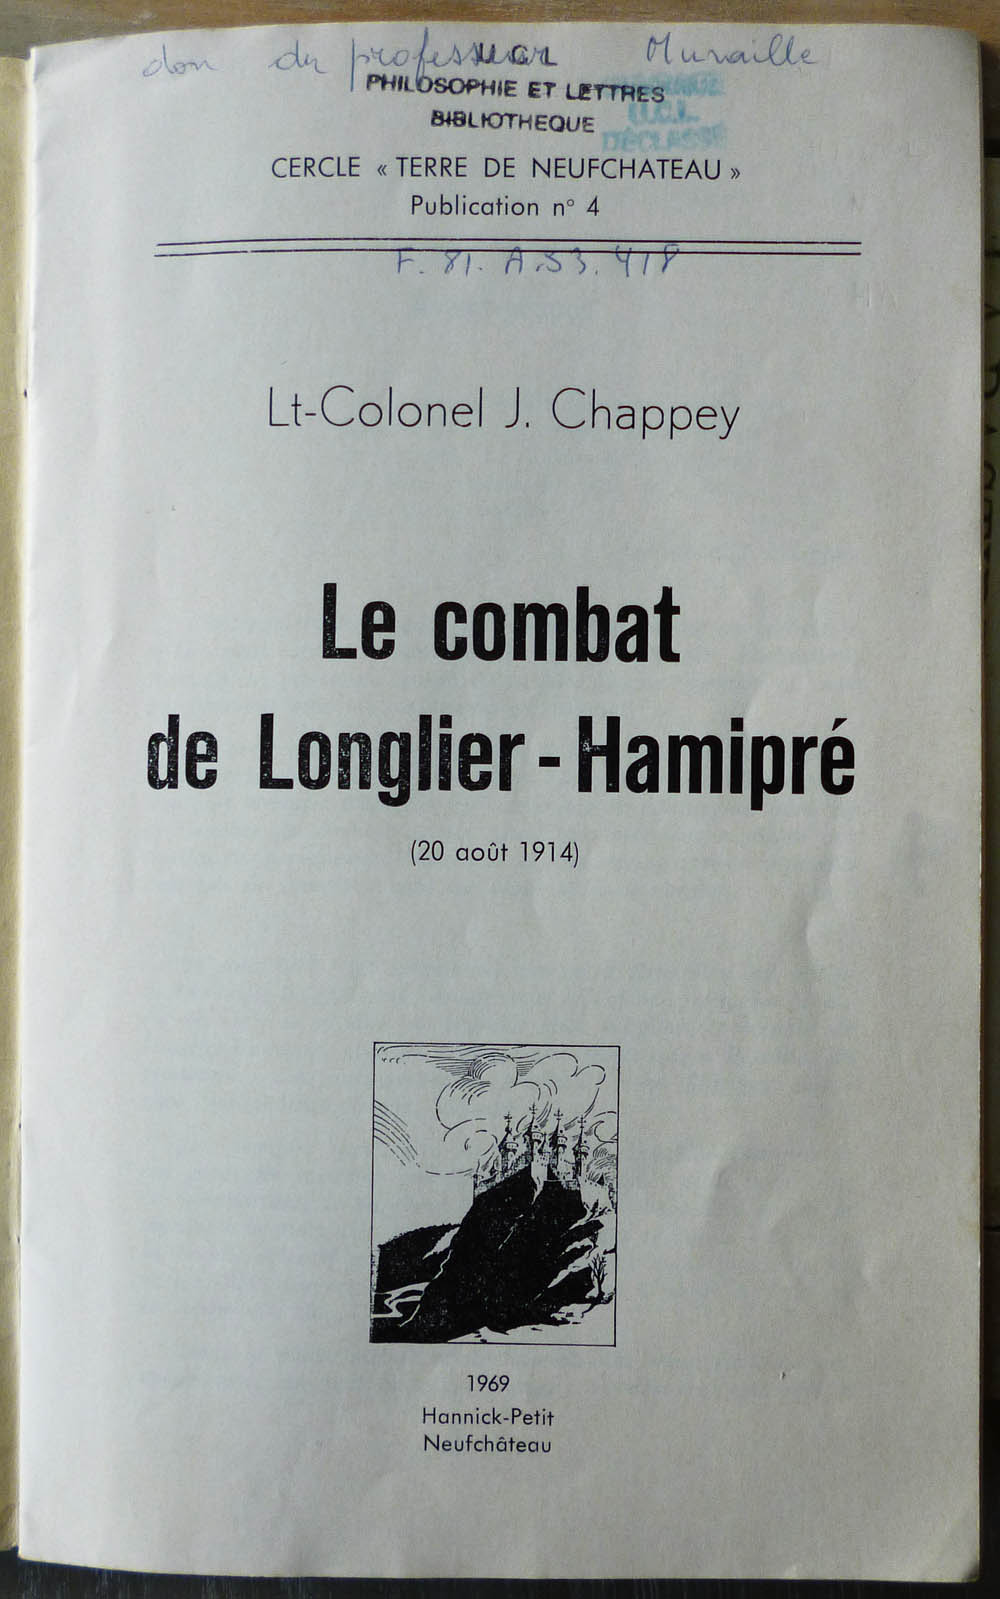 site me be le combat de Longlier-Hamipré de Chappey